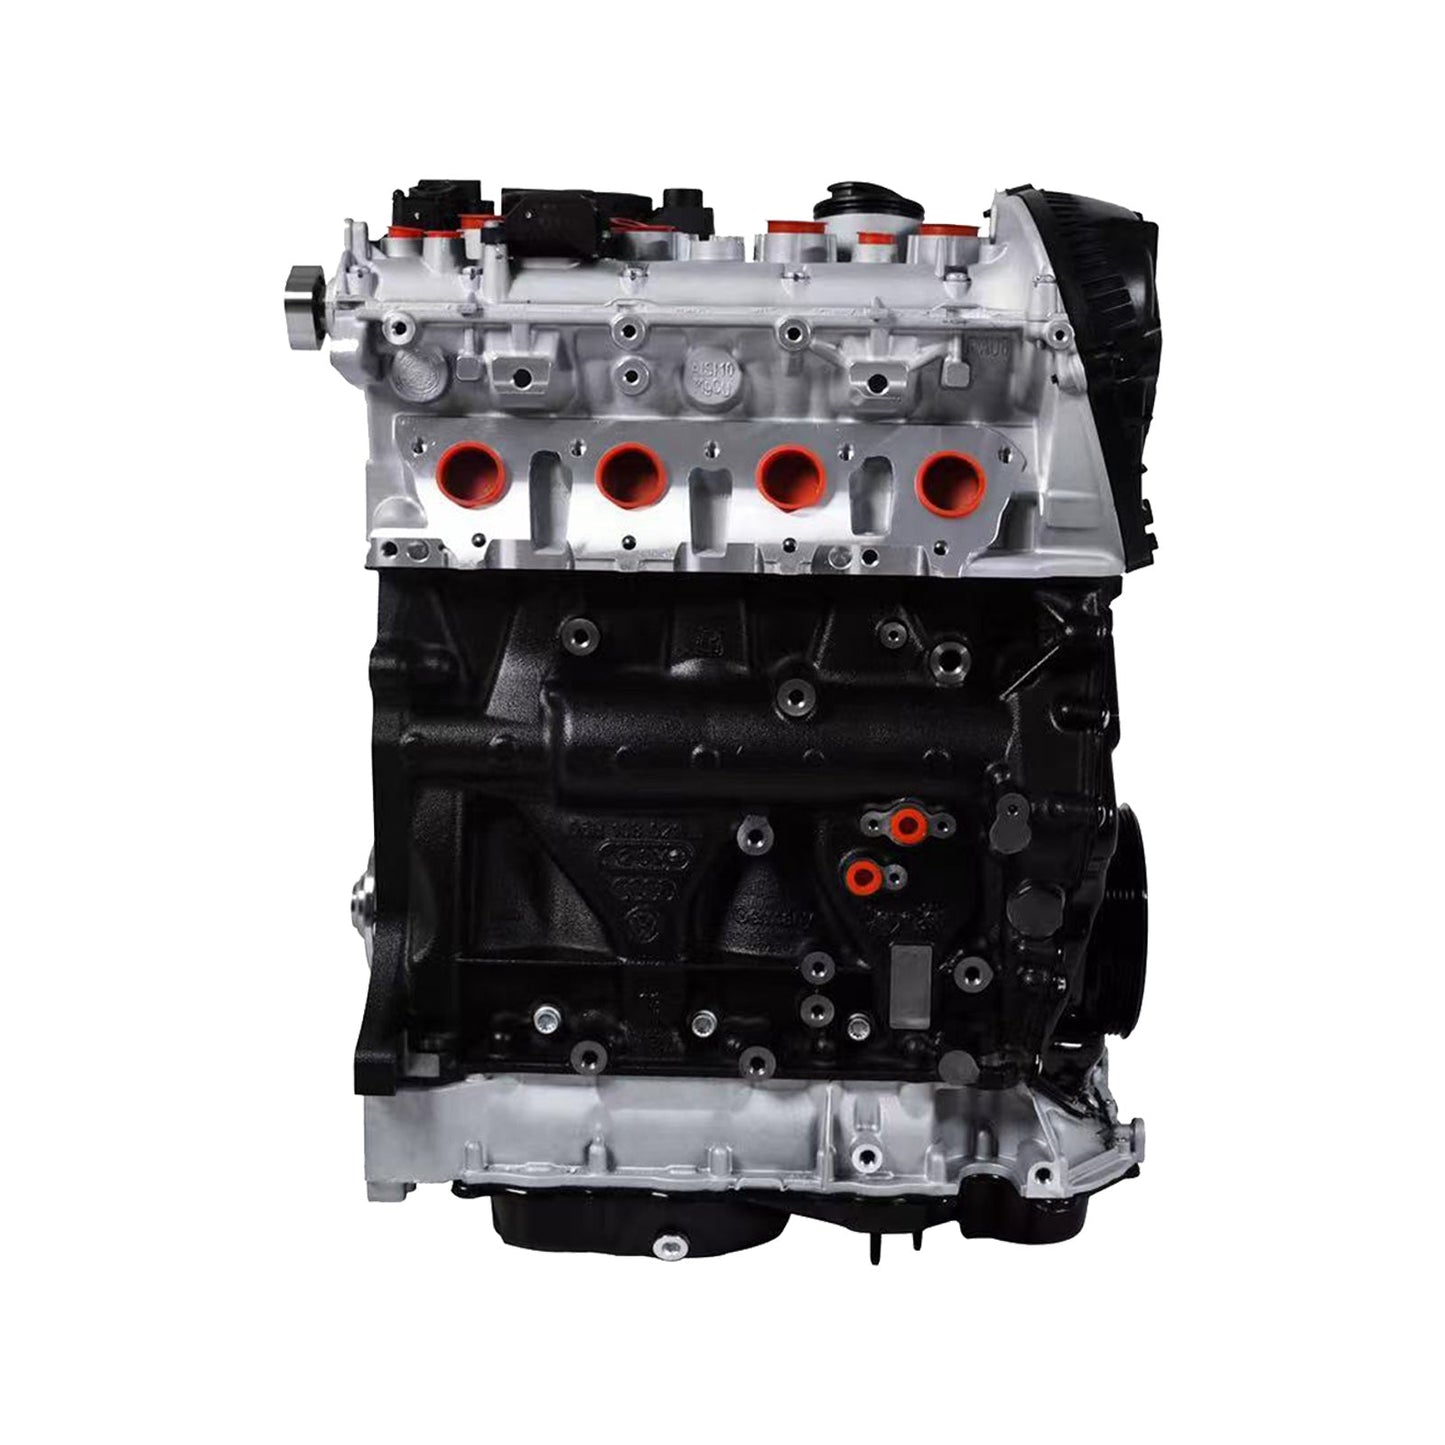 EA888 GEN2 CDA 1.8T Gasoline Engine Motor 06J100035J 06J100037 For Golf Passat